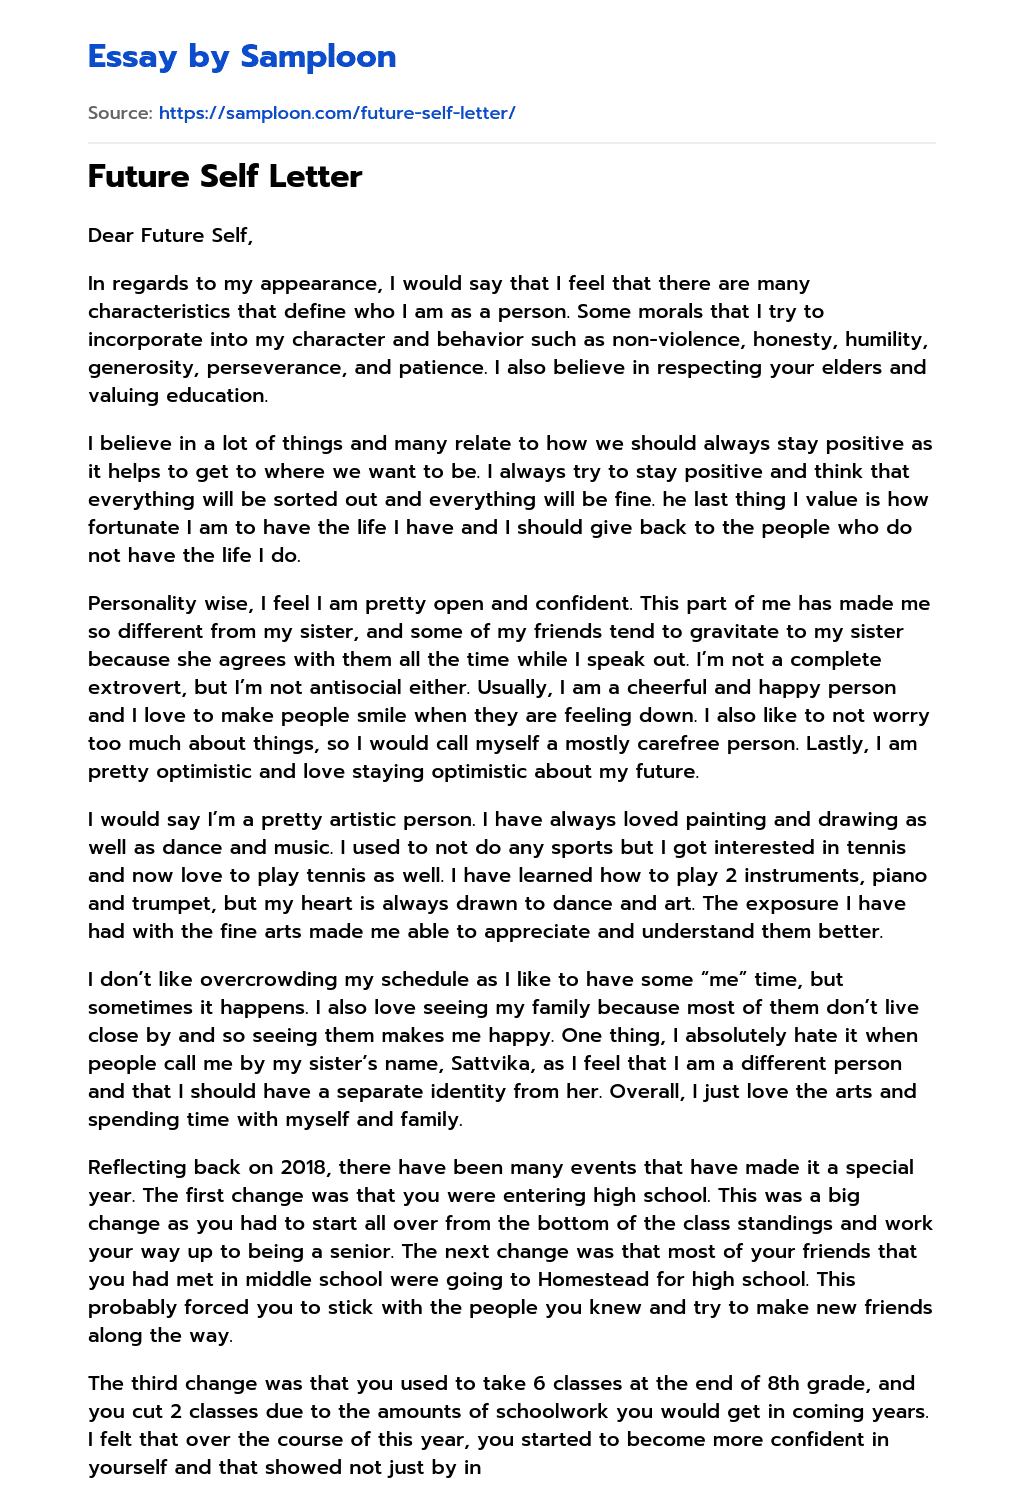 Future Self Letter essay